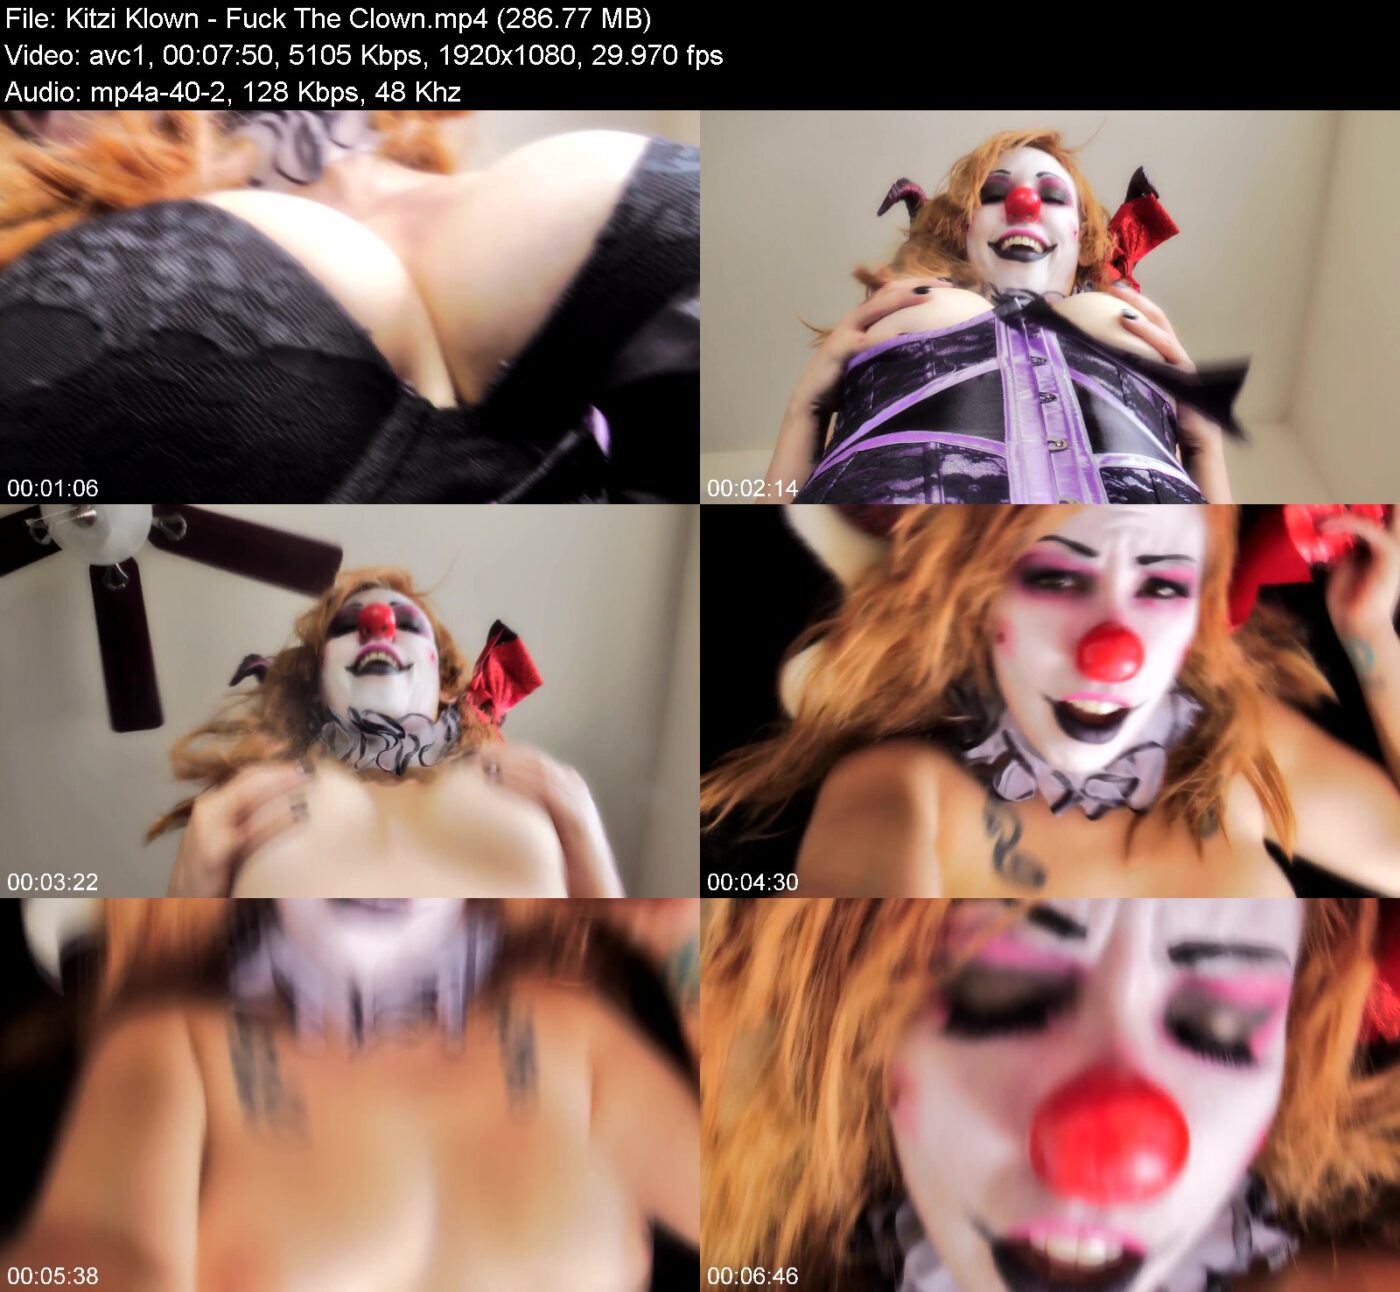 Kitzi Klown in Fuck The Clown